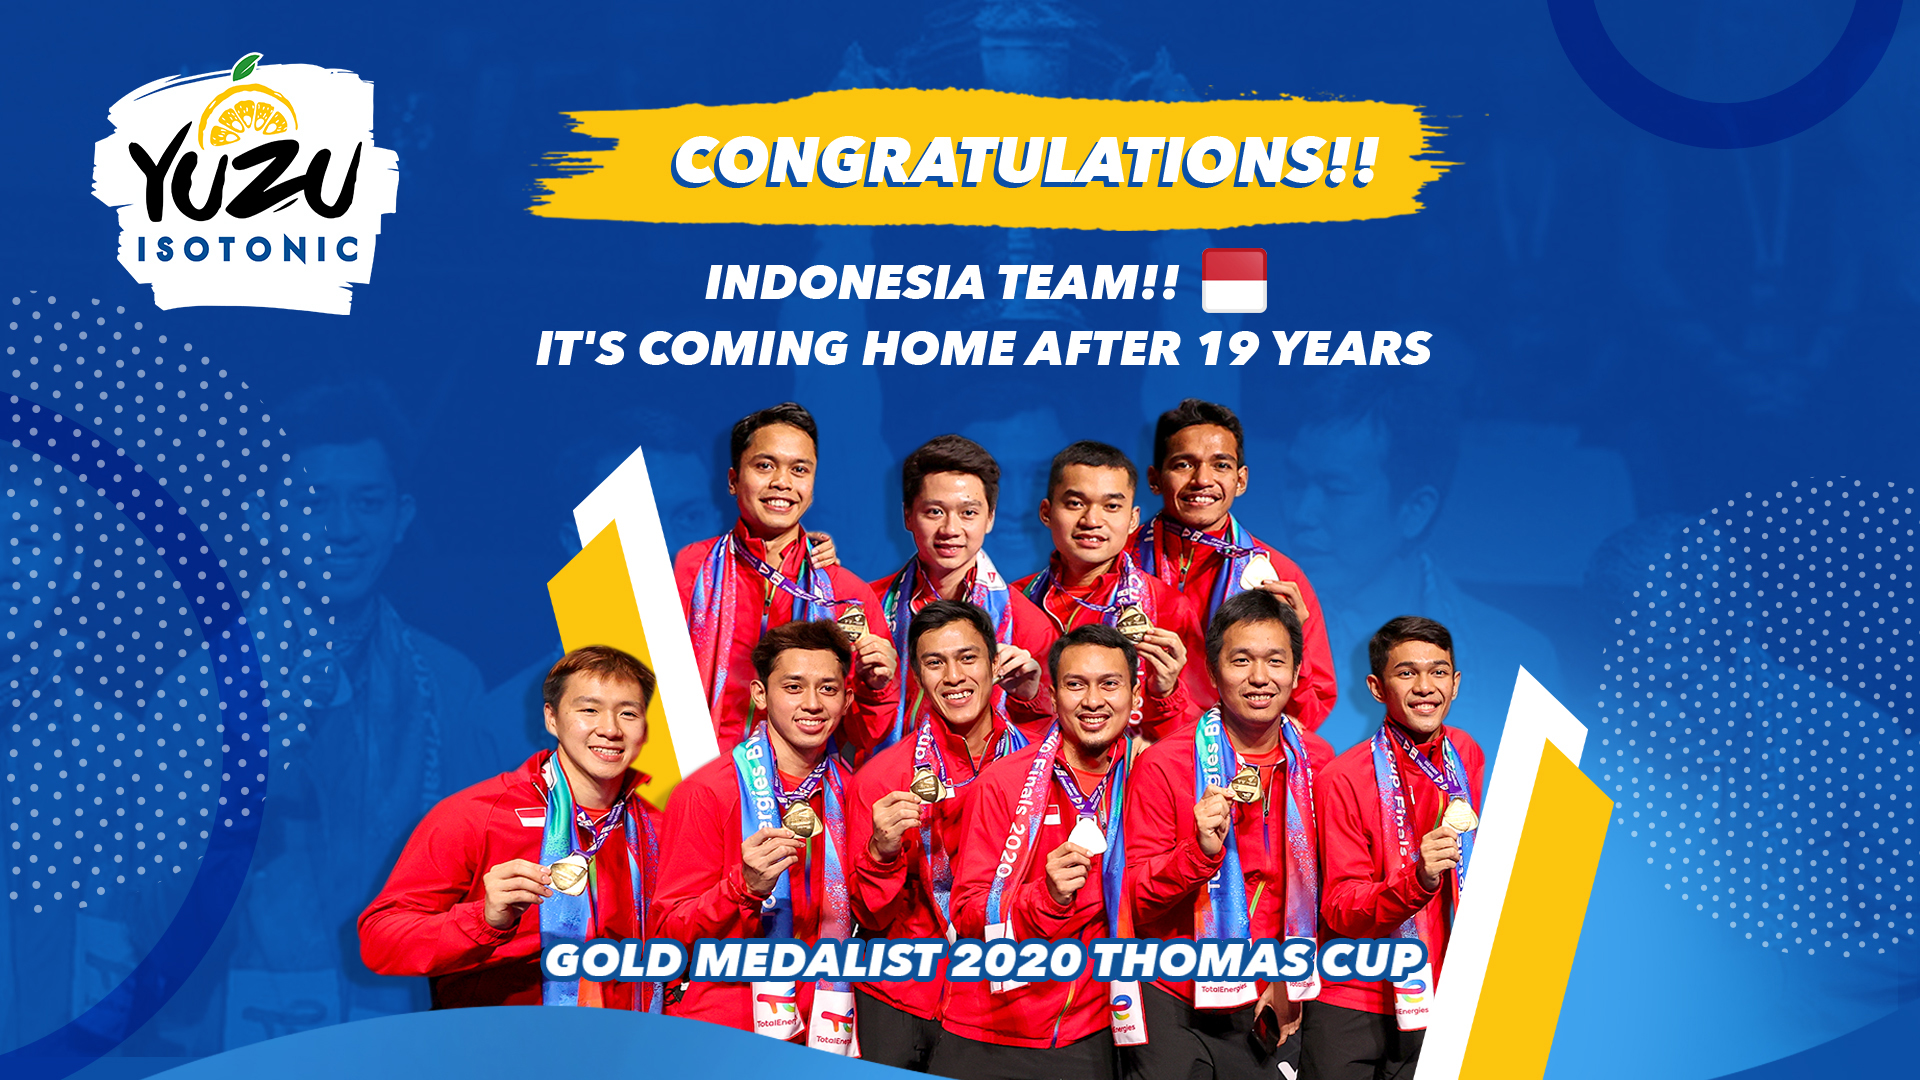 Kemenangan Thomas Cup Bukan Akhir Perjalanan, YUZU ISOTONIC Terus Dukung Atlet Indonesia Lanjutkan T